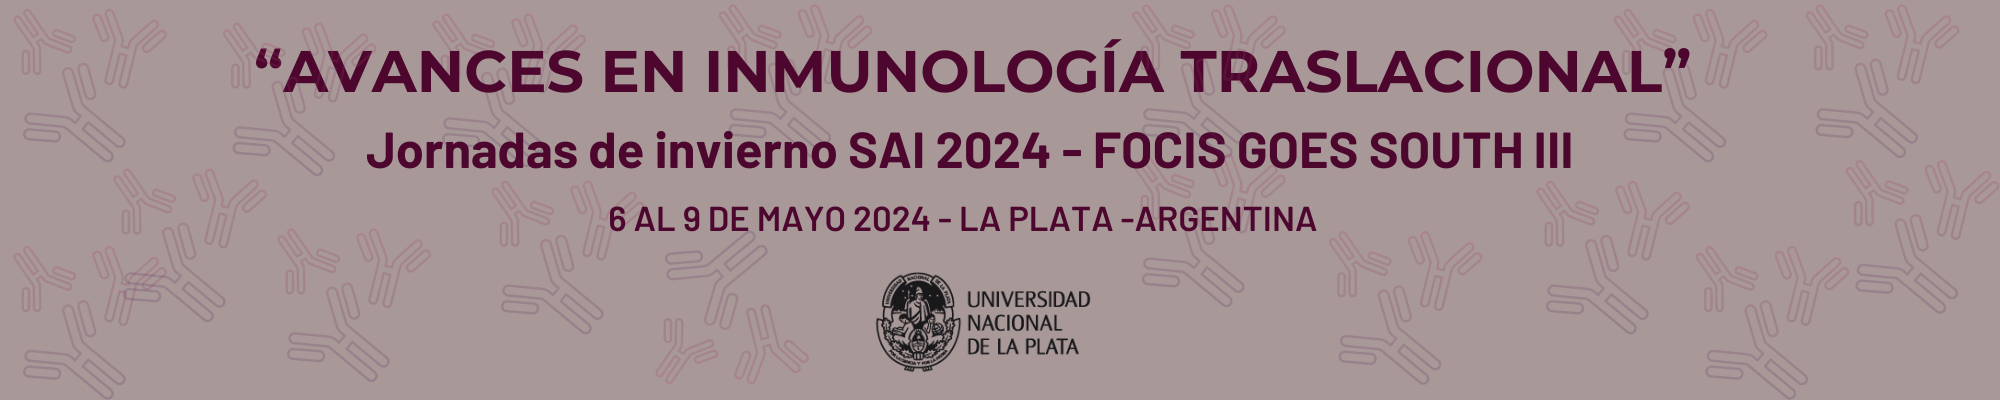 "Avances en Inmunología Traslacional" Jornadas de Invierno SAI 2024 | Focis go South III  Logo